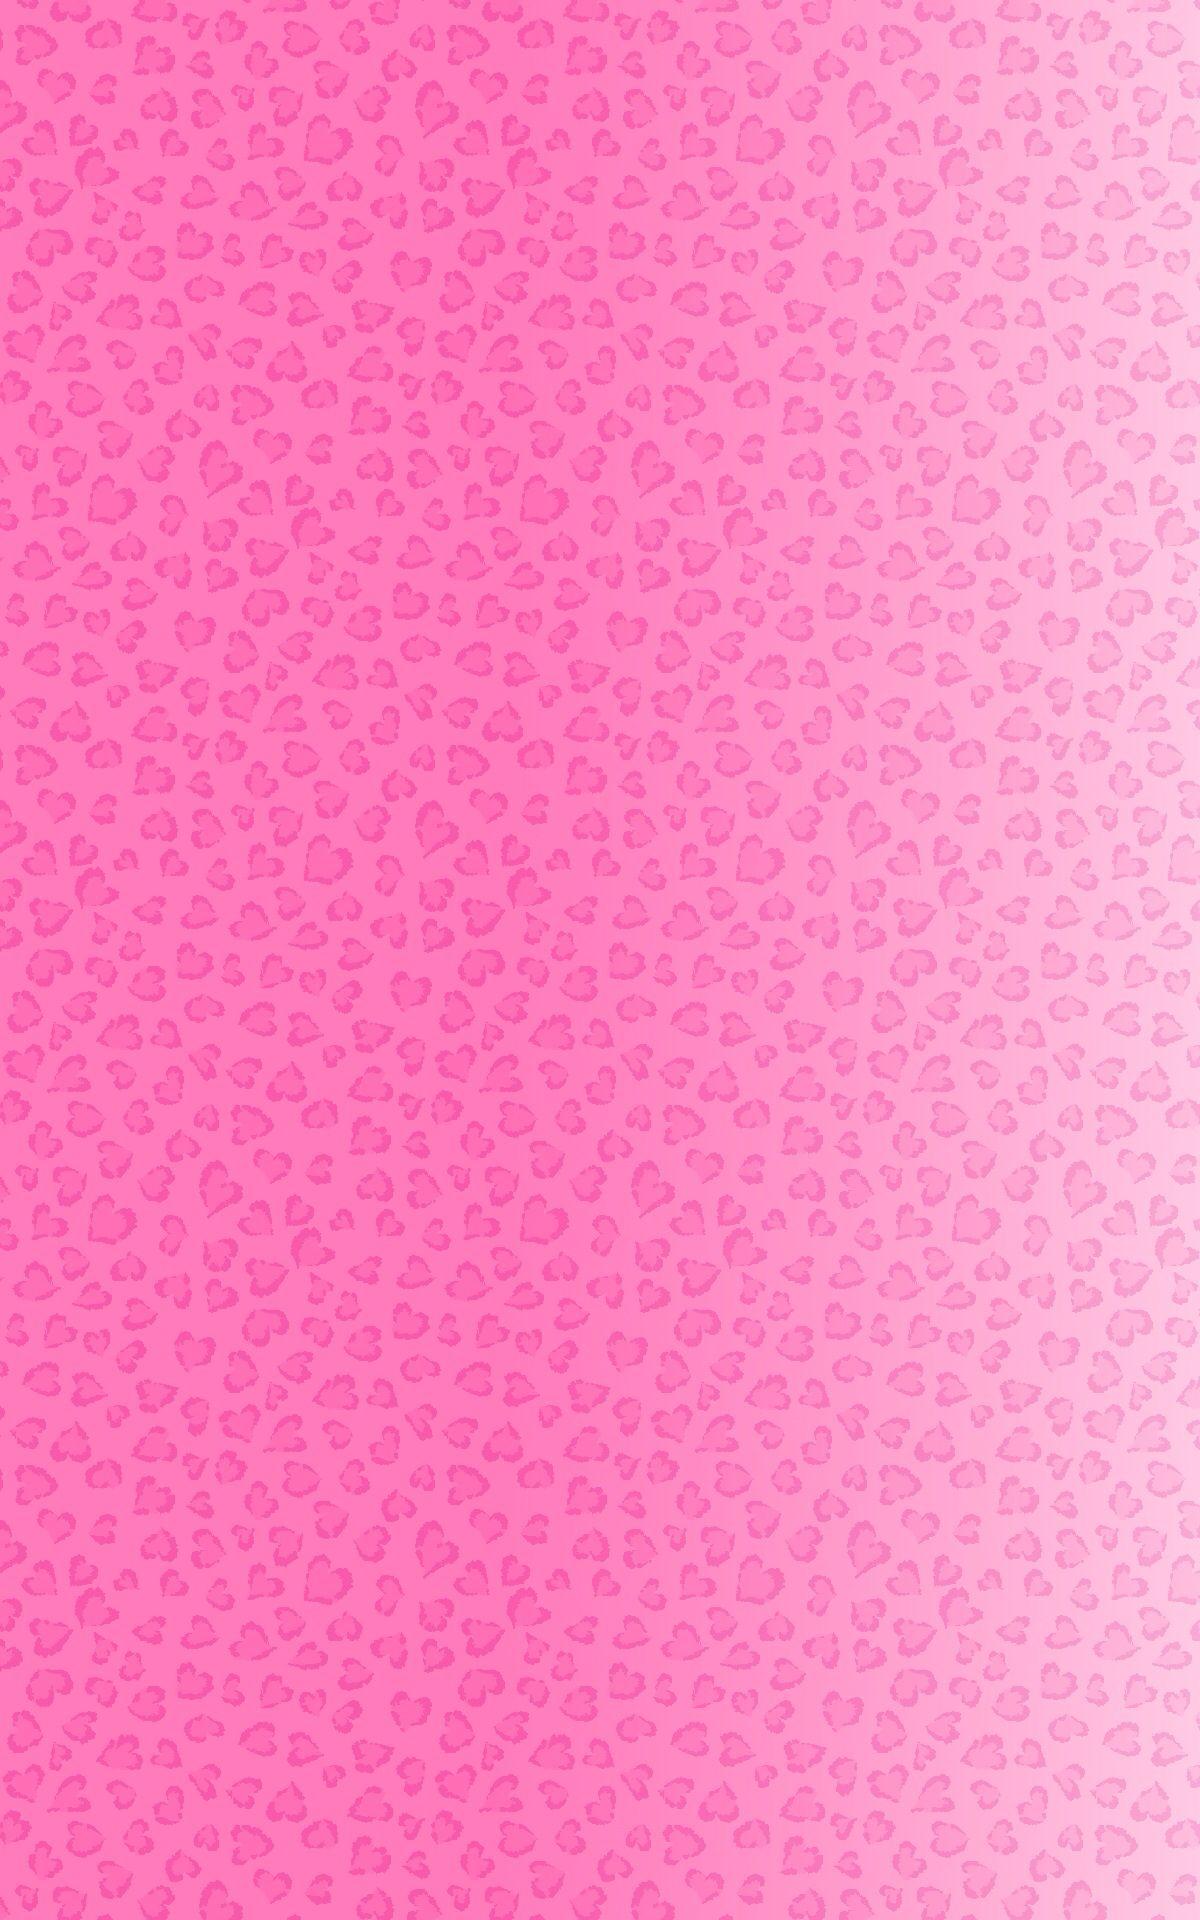 Pink Heart Leopard Print iPhone Wallpaper